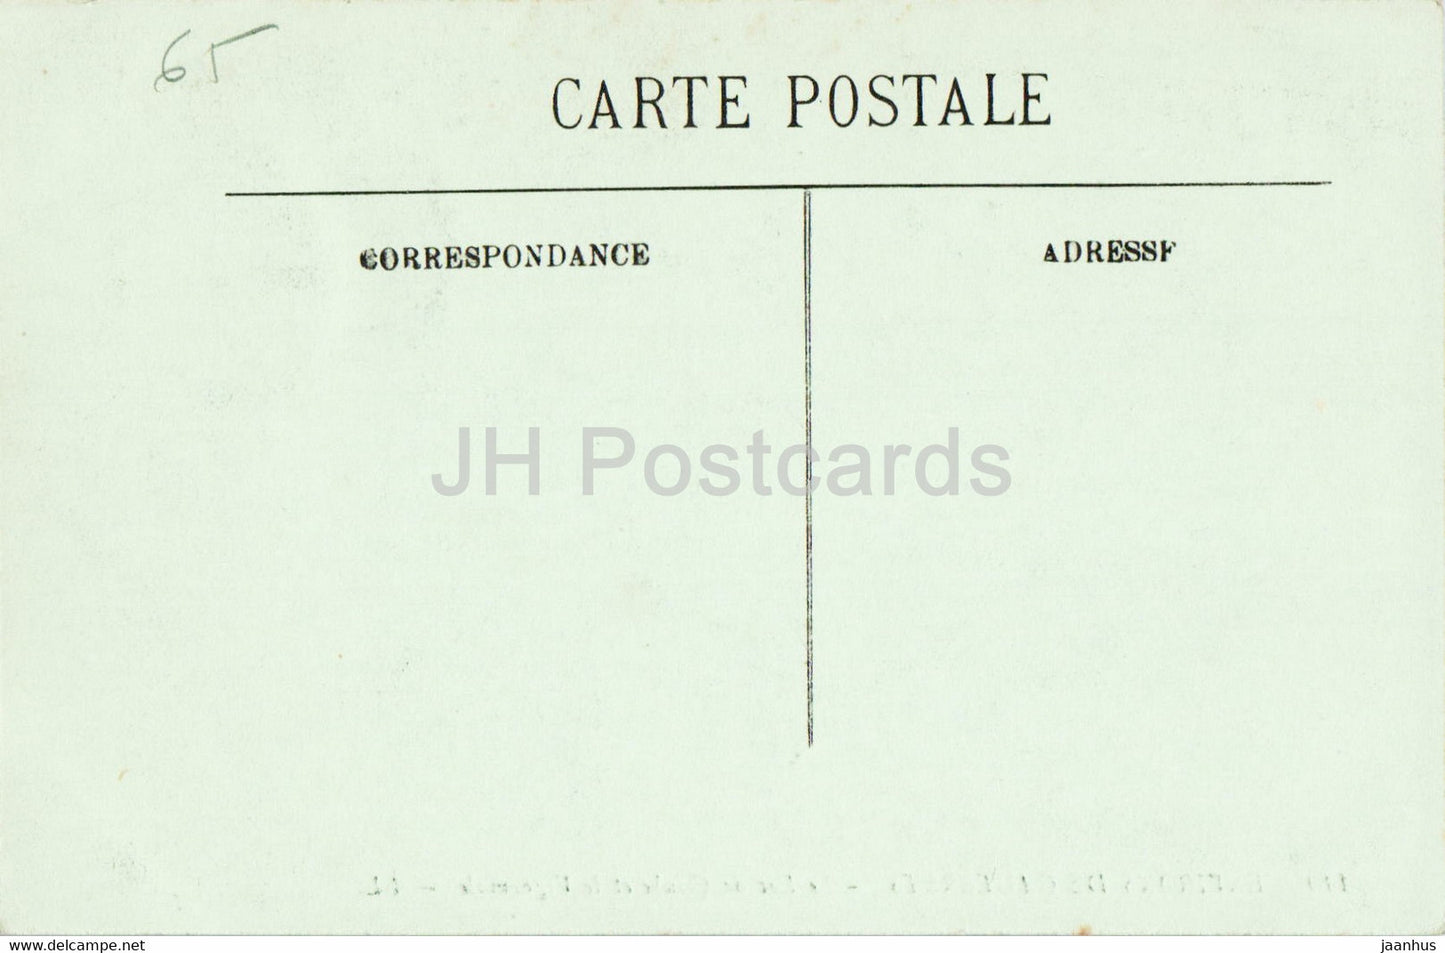 Environs de Cauterets - Le Lac de Gaube et le Vignemale - 110 - alte Postkarte - Frankreich - unbenutzt